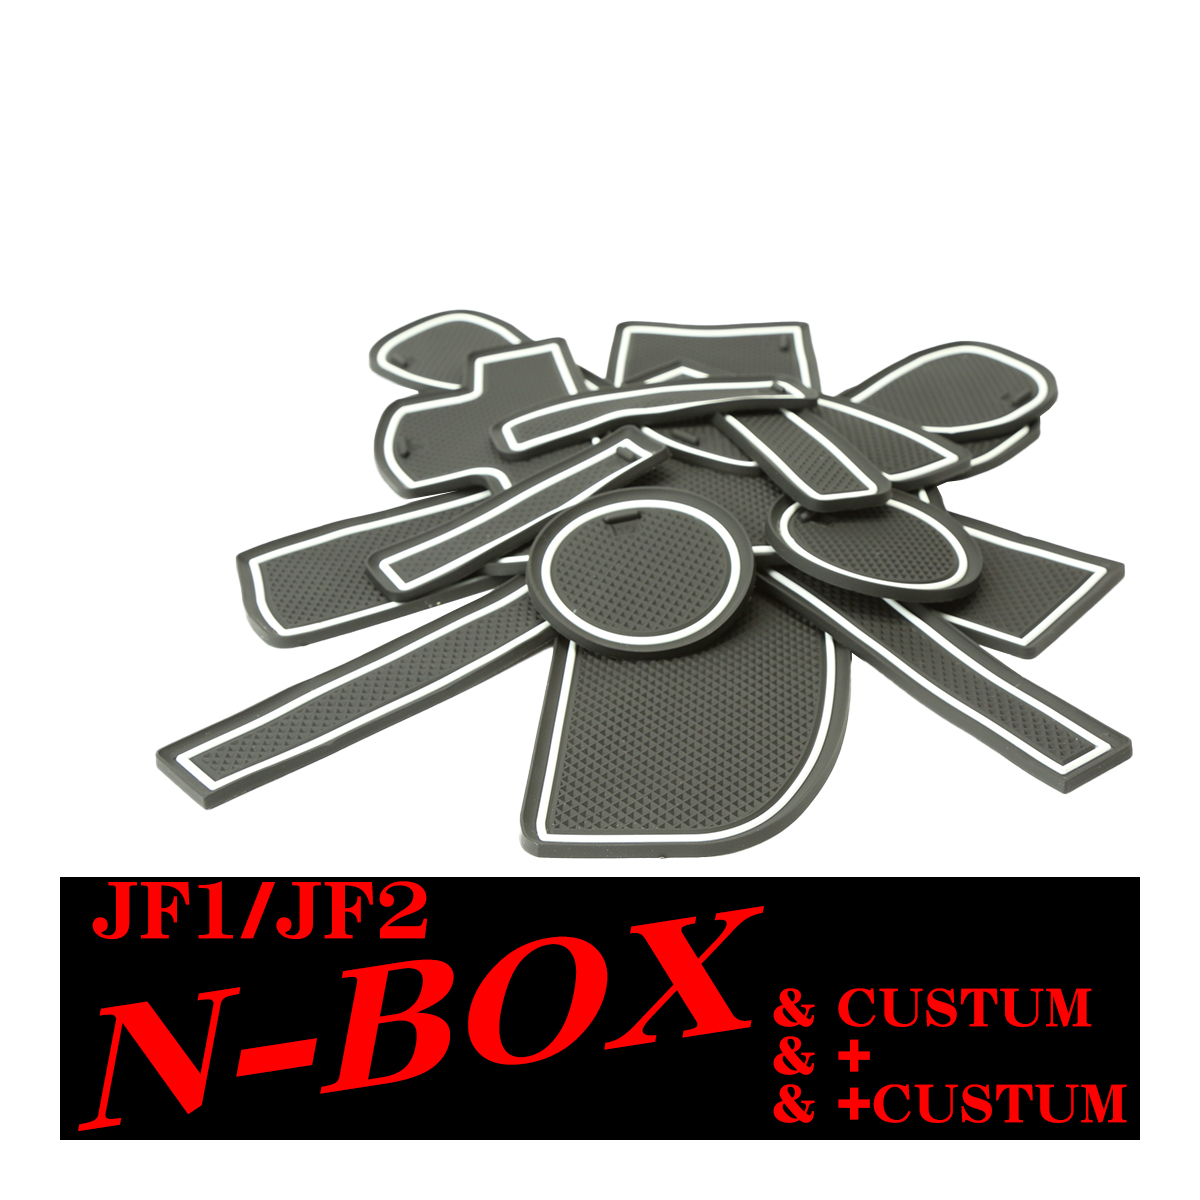 JF1/JF2 N-BOX N-BOXカスタム/プラス/プラスカスタム ゴム ポケット マット ブル...